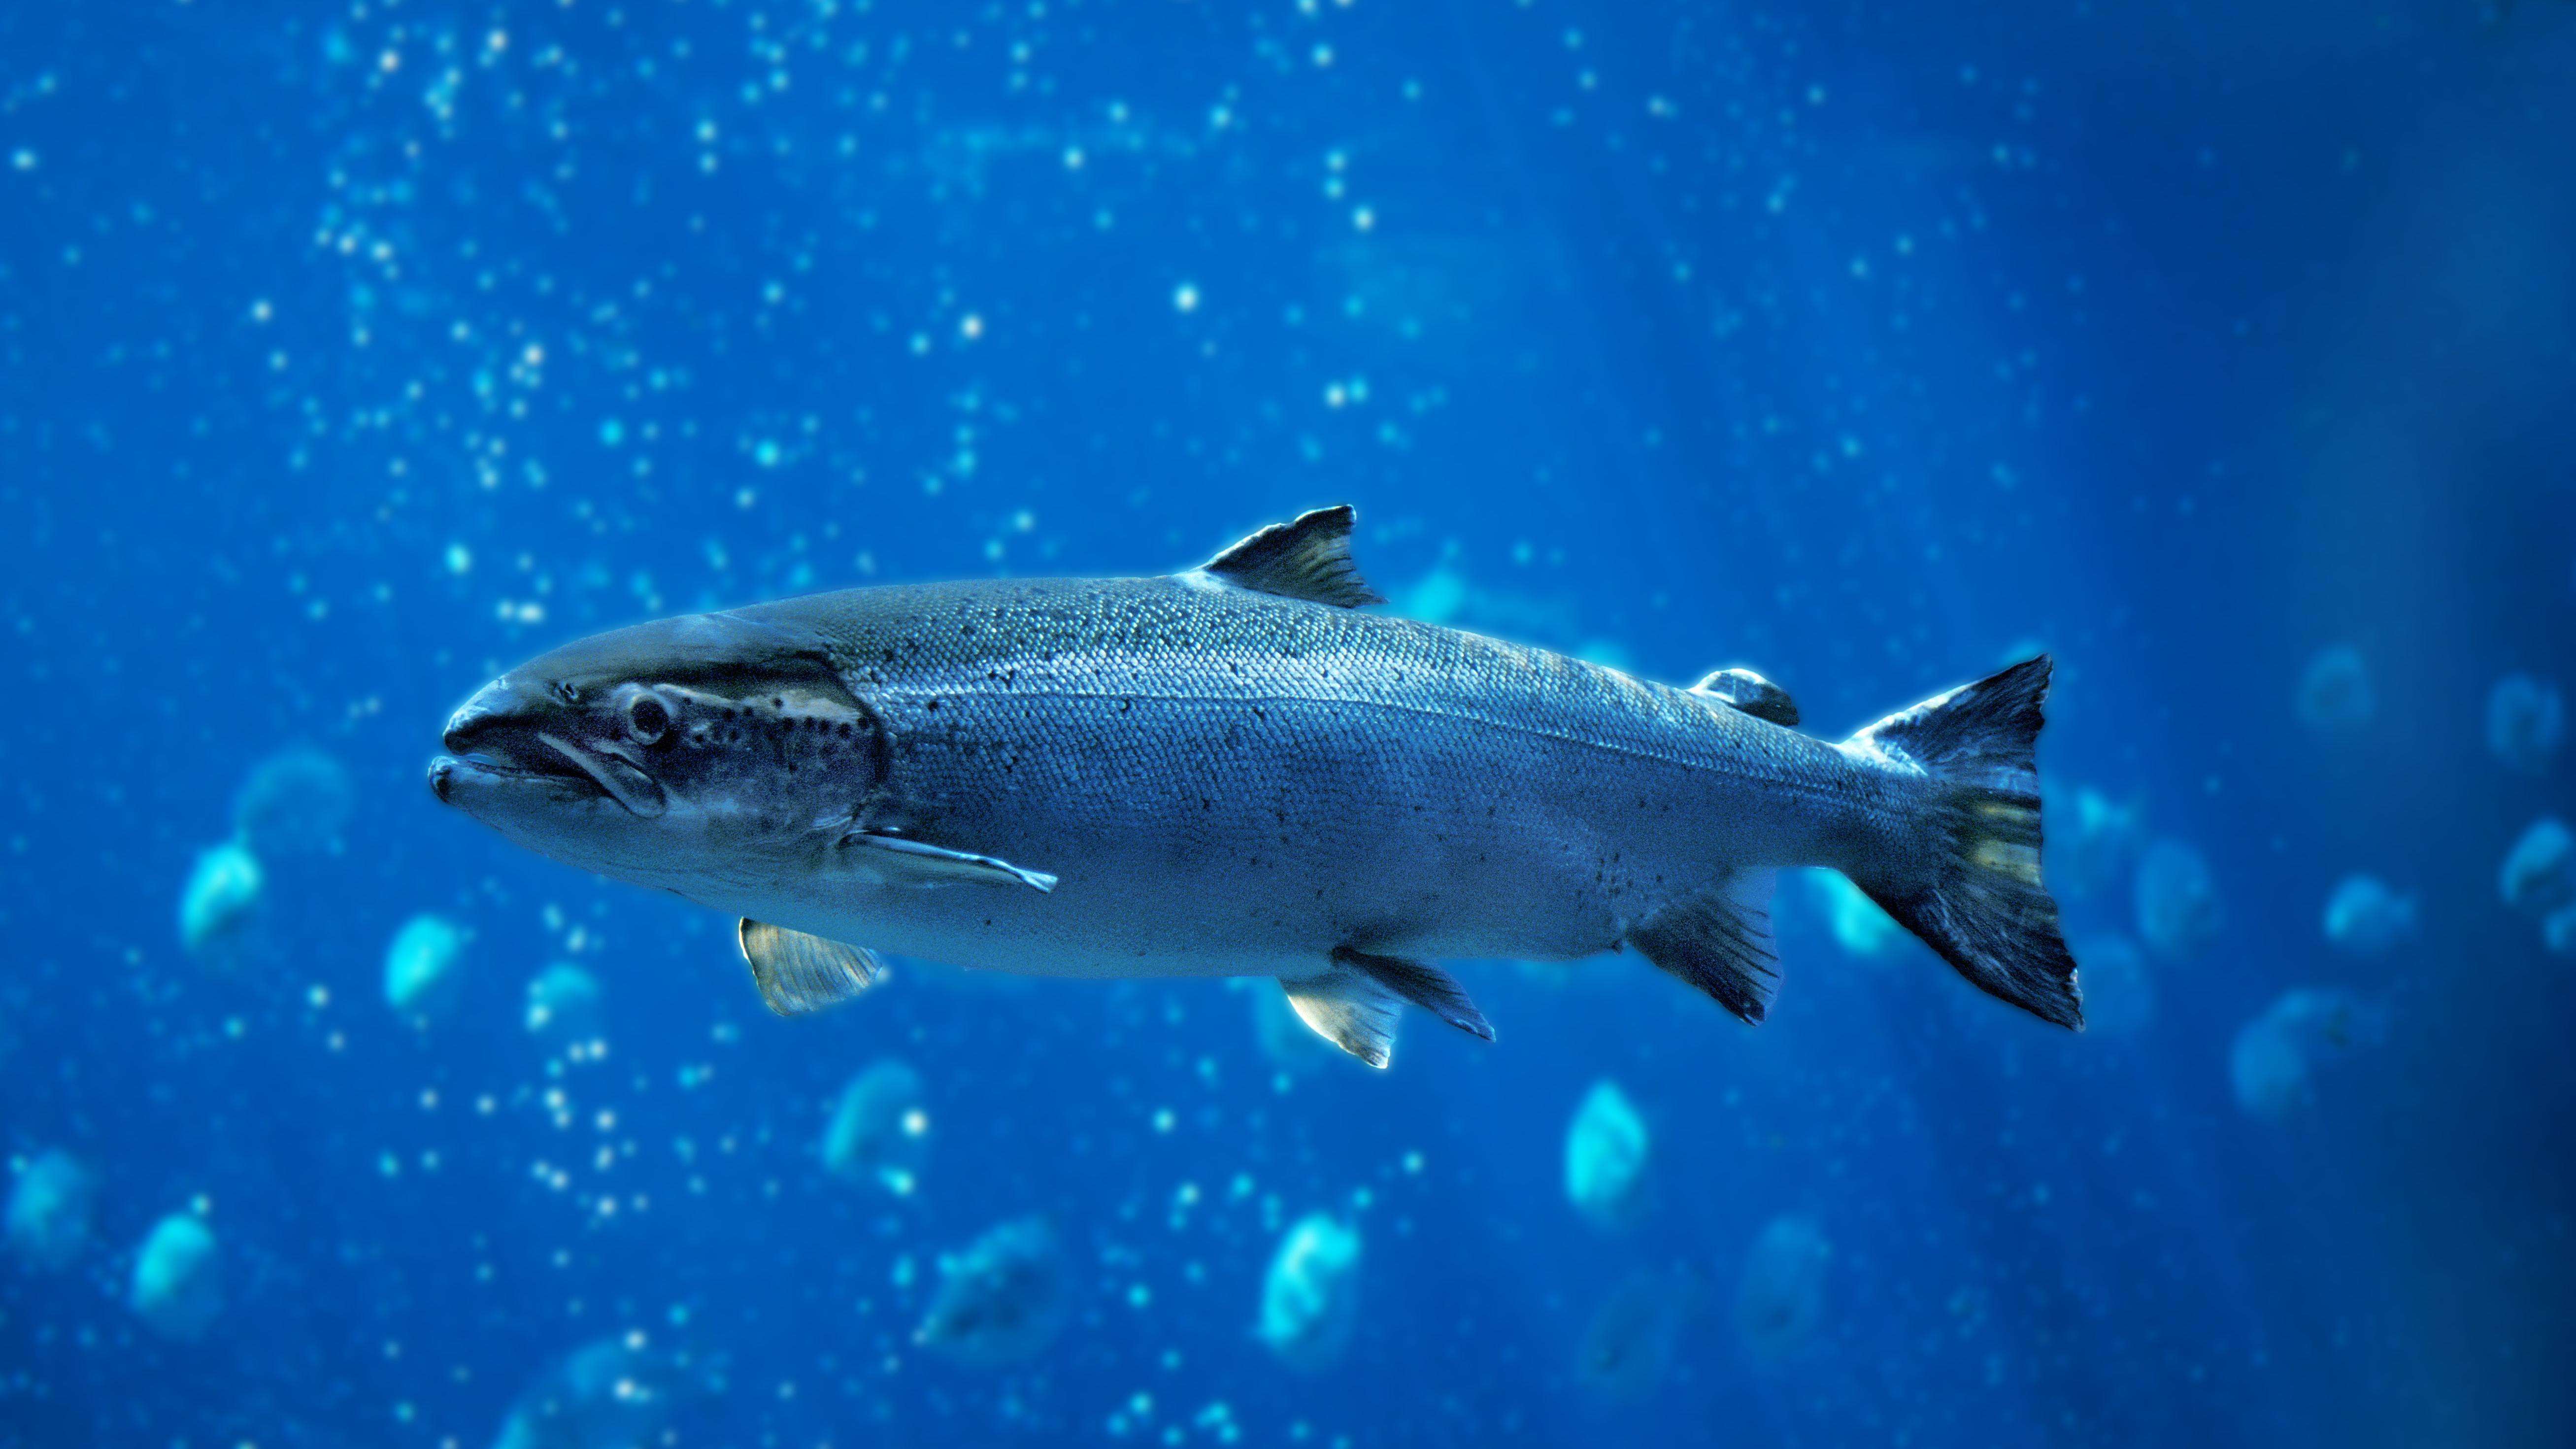 Single salmon fish swimming in blue water.